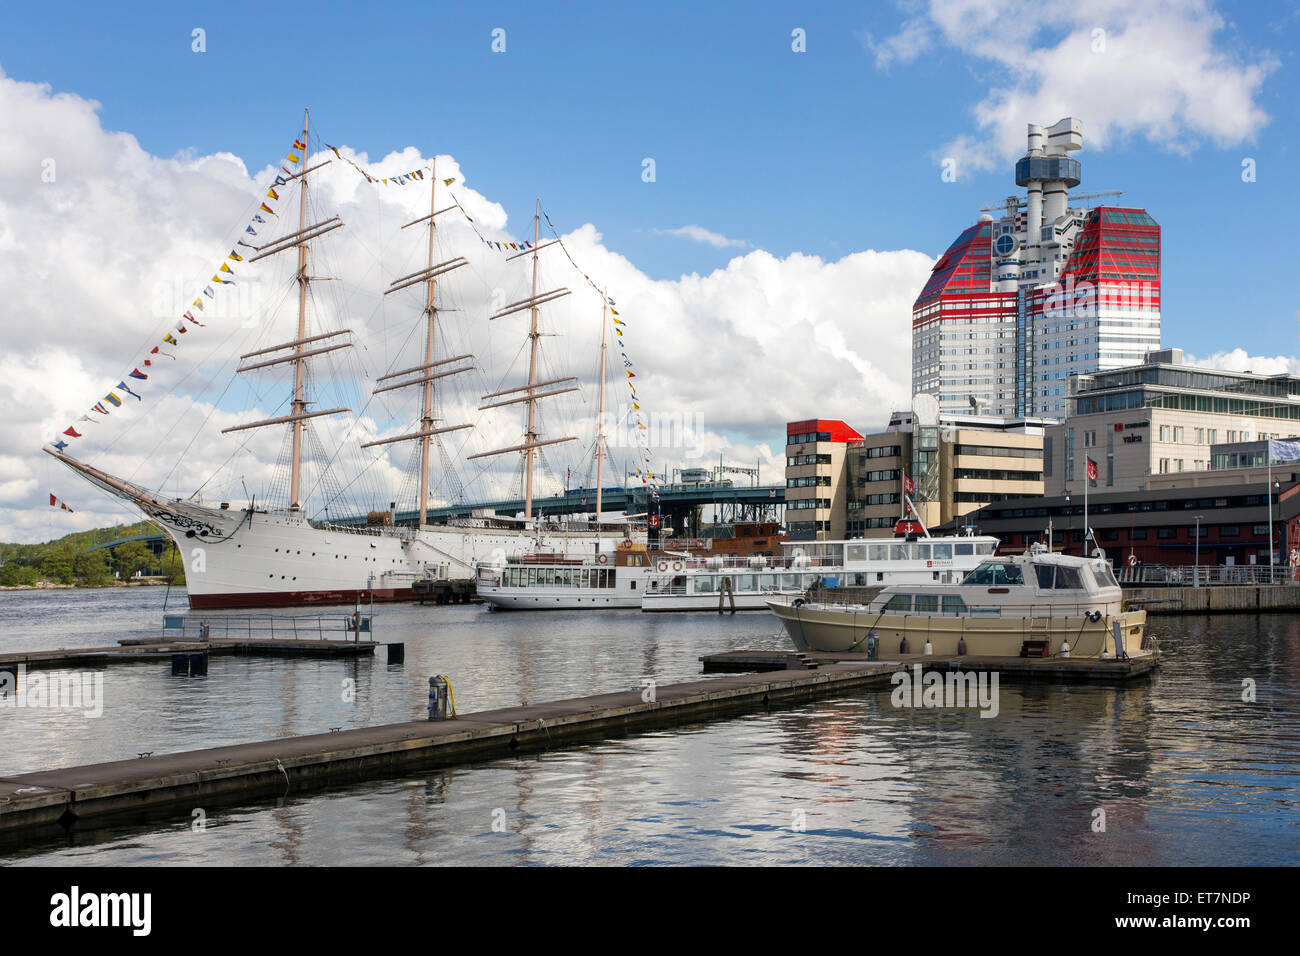 Imbarcazione a vela in porto, Lilla Bommen o il rossetto, Göteborg, Svezia Foto Stock